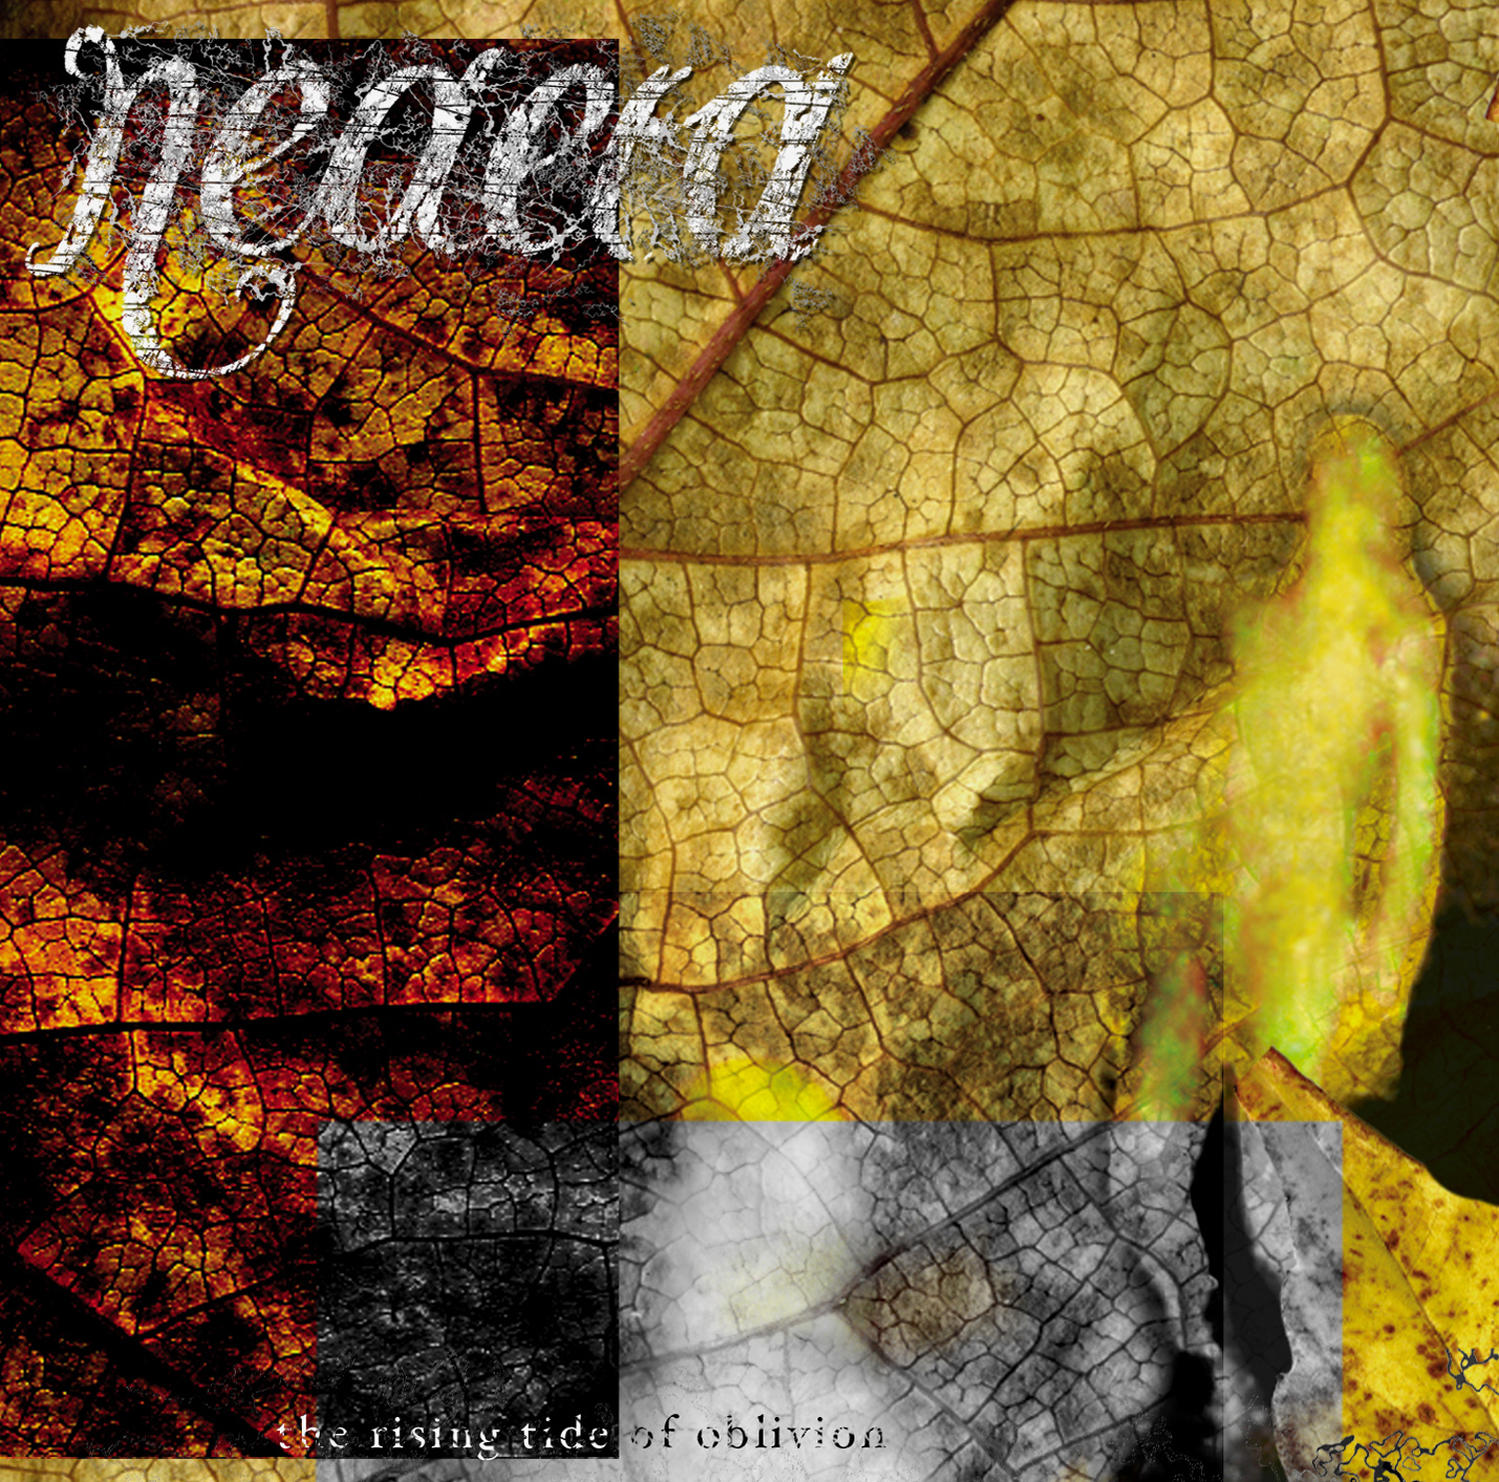 Neaera - The Reissue - Of Tide Rising (Vinyl) Oblivion